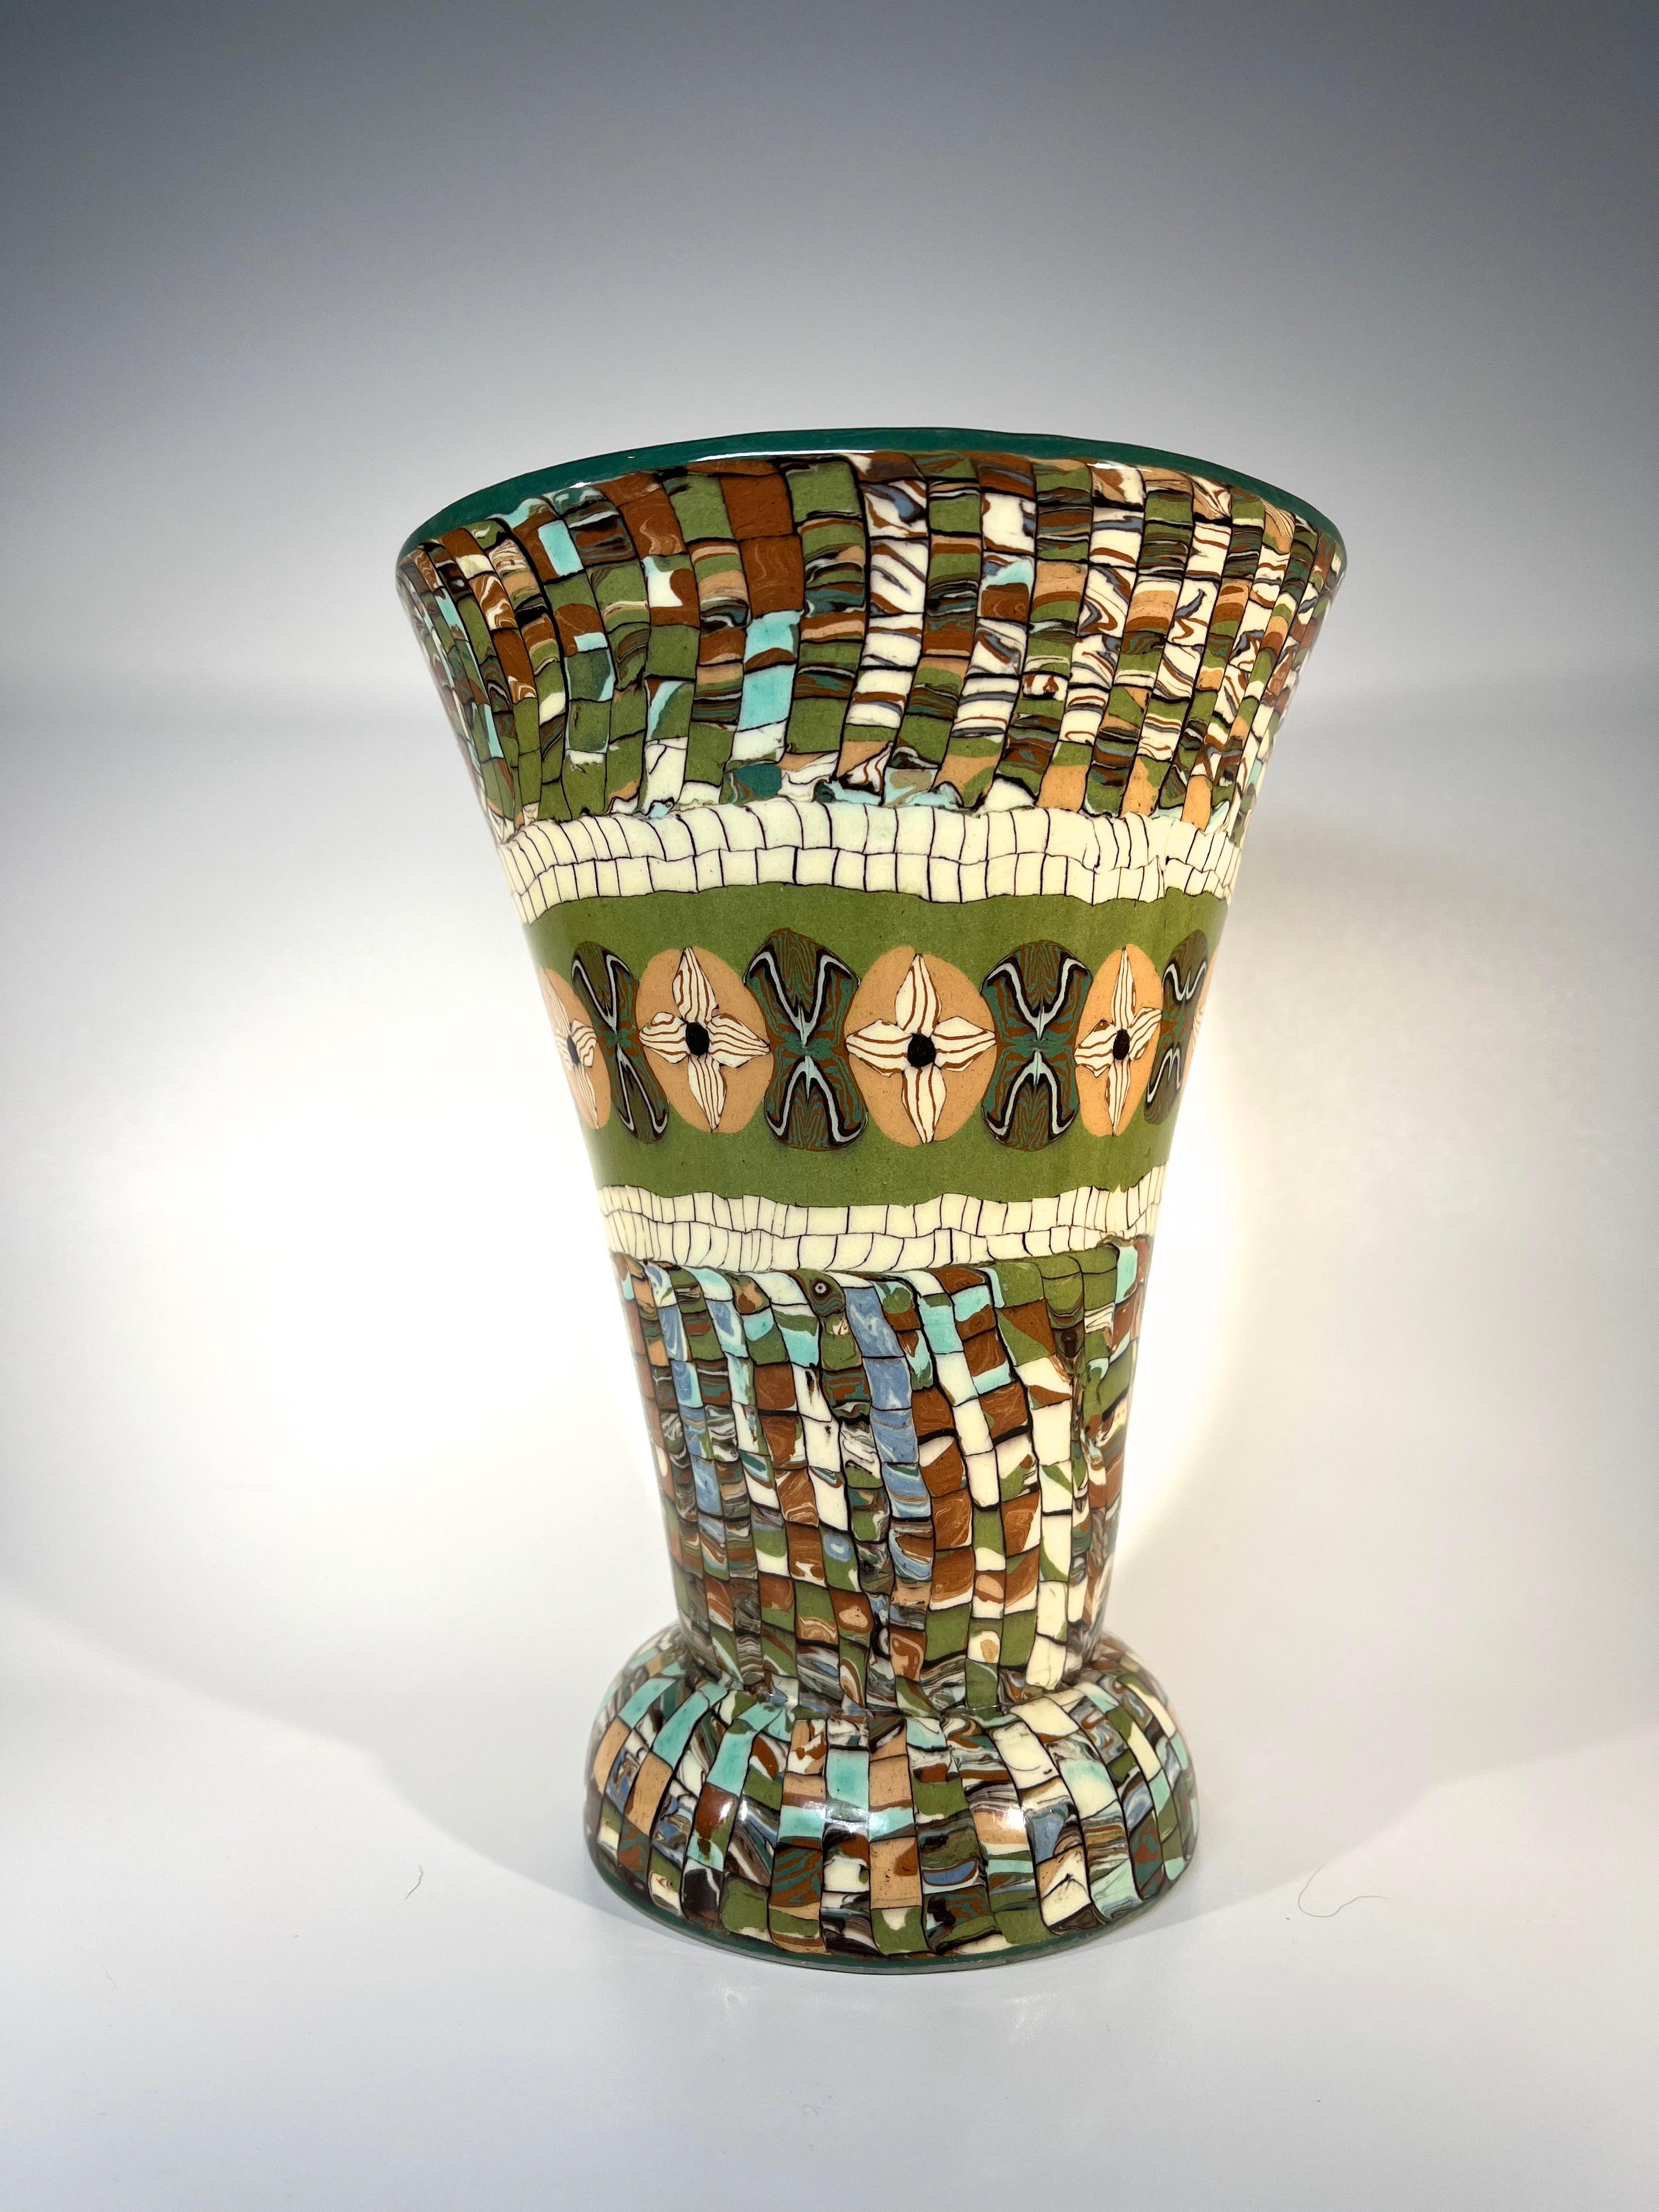 Der Keramikmeister Jean Gerbino schuf für Vallauris eine großartig gestaltete, ausgestellte Vase mit Mosaikmuster in den Farben Blattgrün, Salbei, Sand und Creme.
CIRCA 1960er Jahre
Gerbino und Vallauris zur Basis verpflichtet
Höhe 7,75 Zoll,